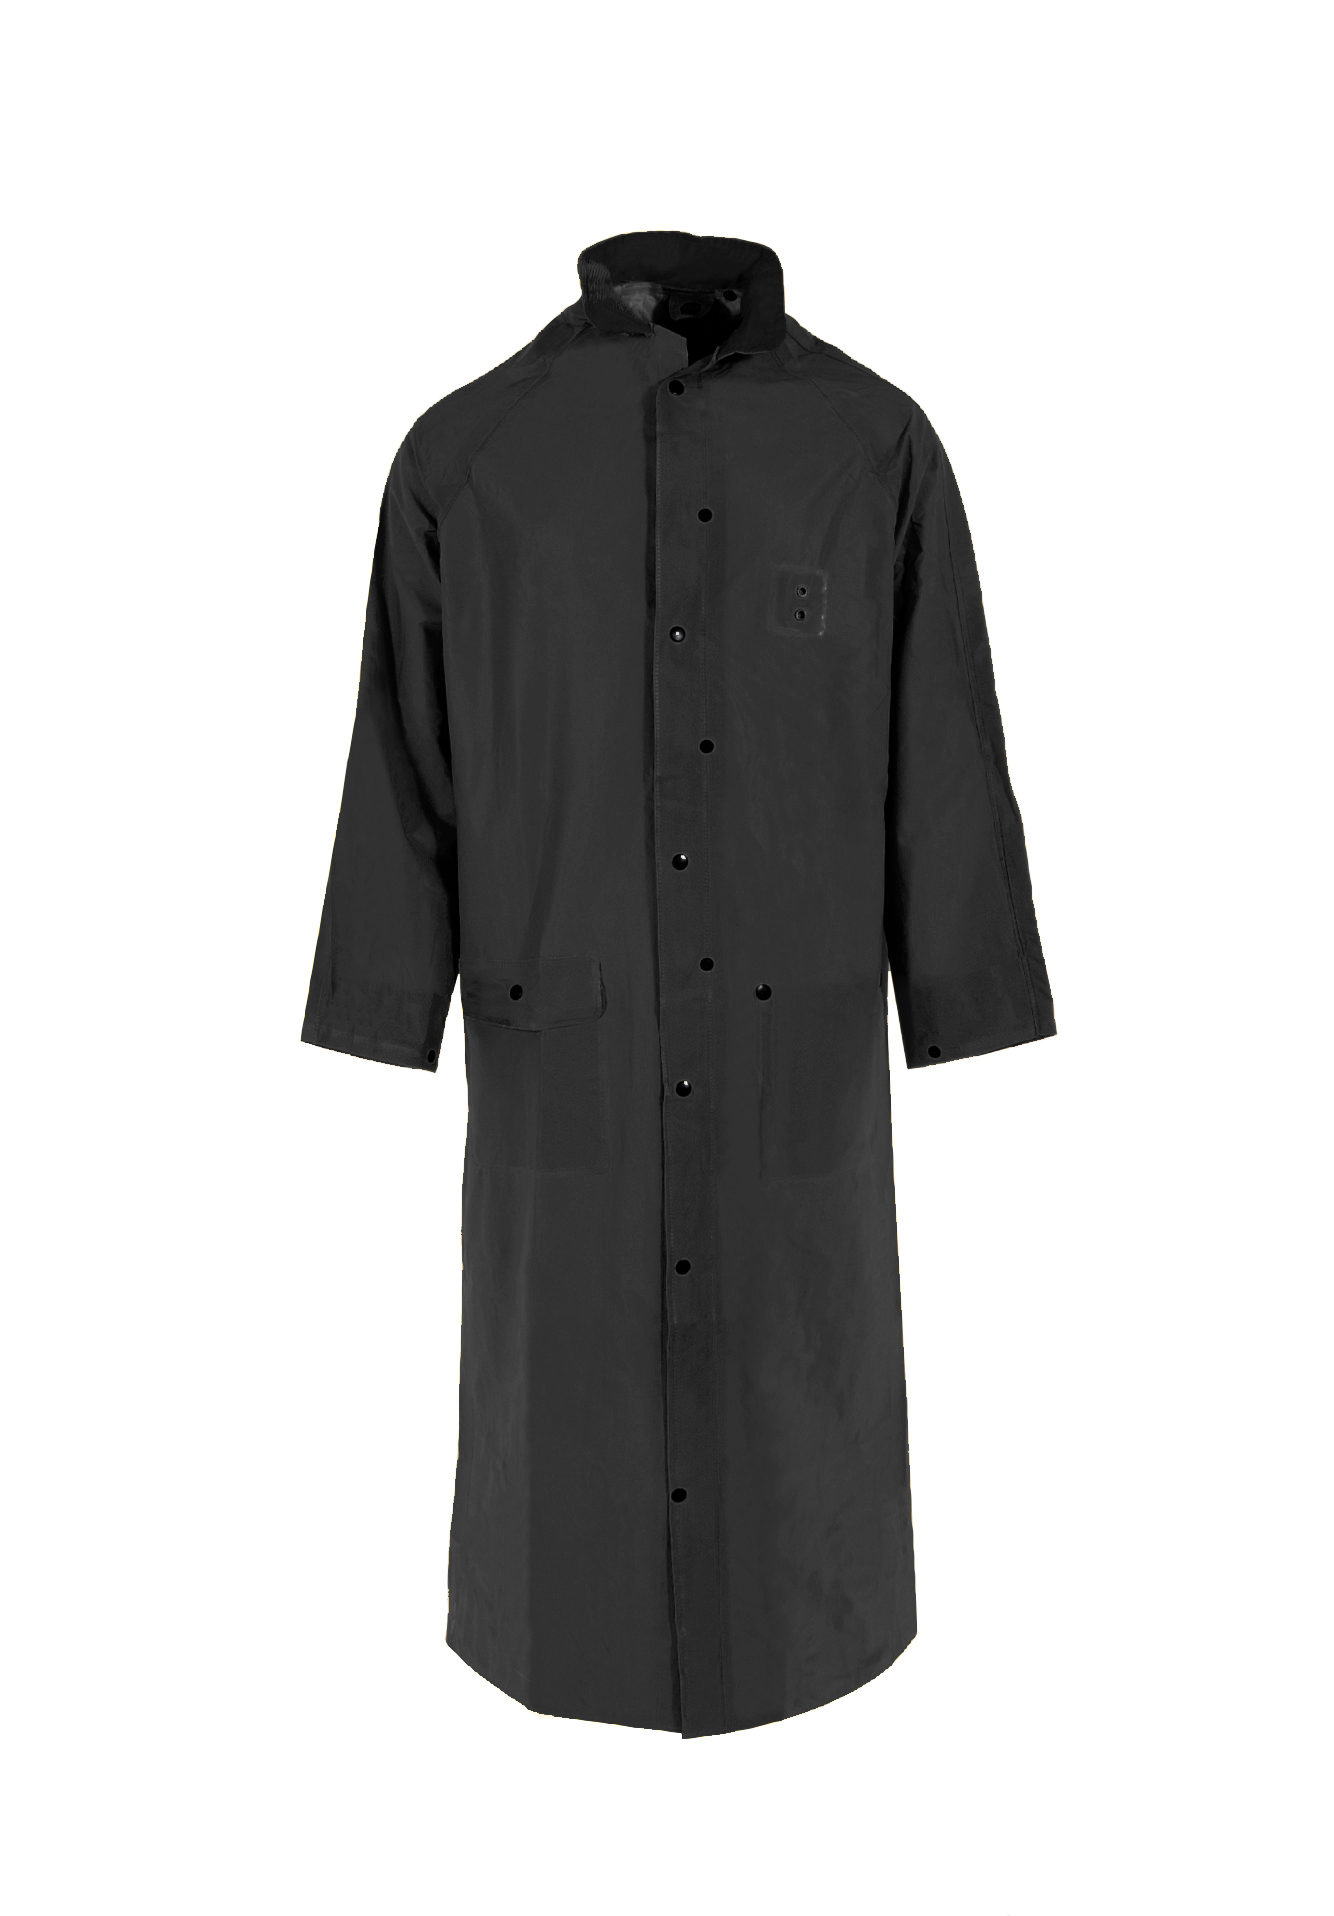 1790C Economy Series 60" Rain Coat - Black - Size 2X